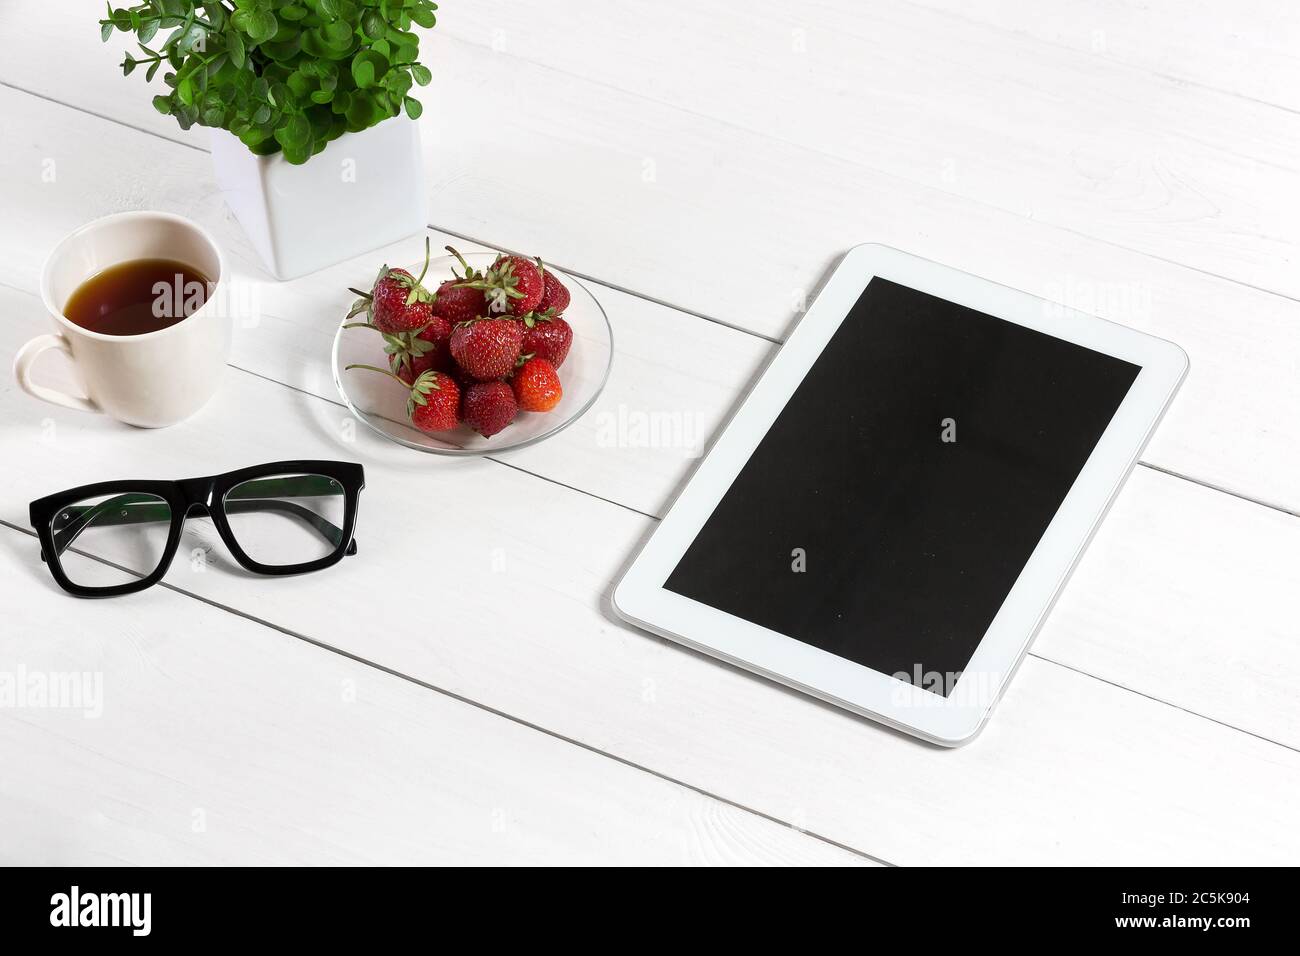 Blumentopf, Brille, Tablet auf weißem Desktop Stockfotografie - Alamy